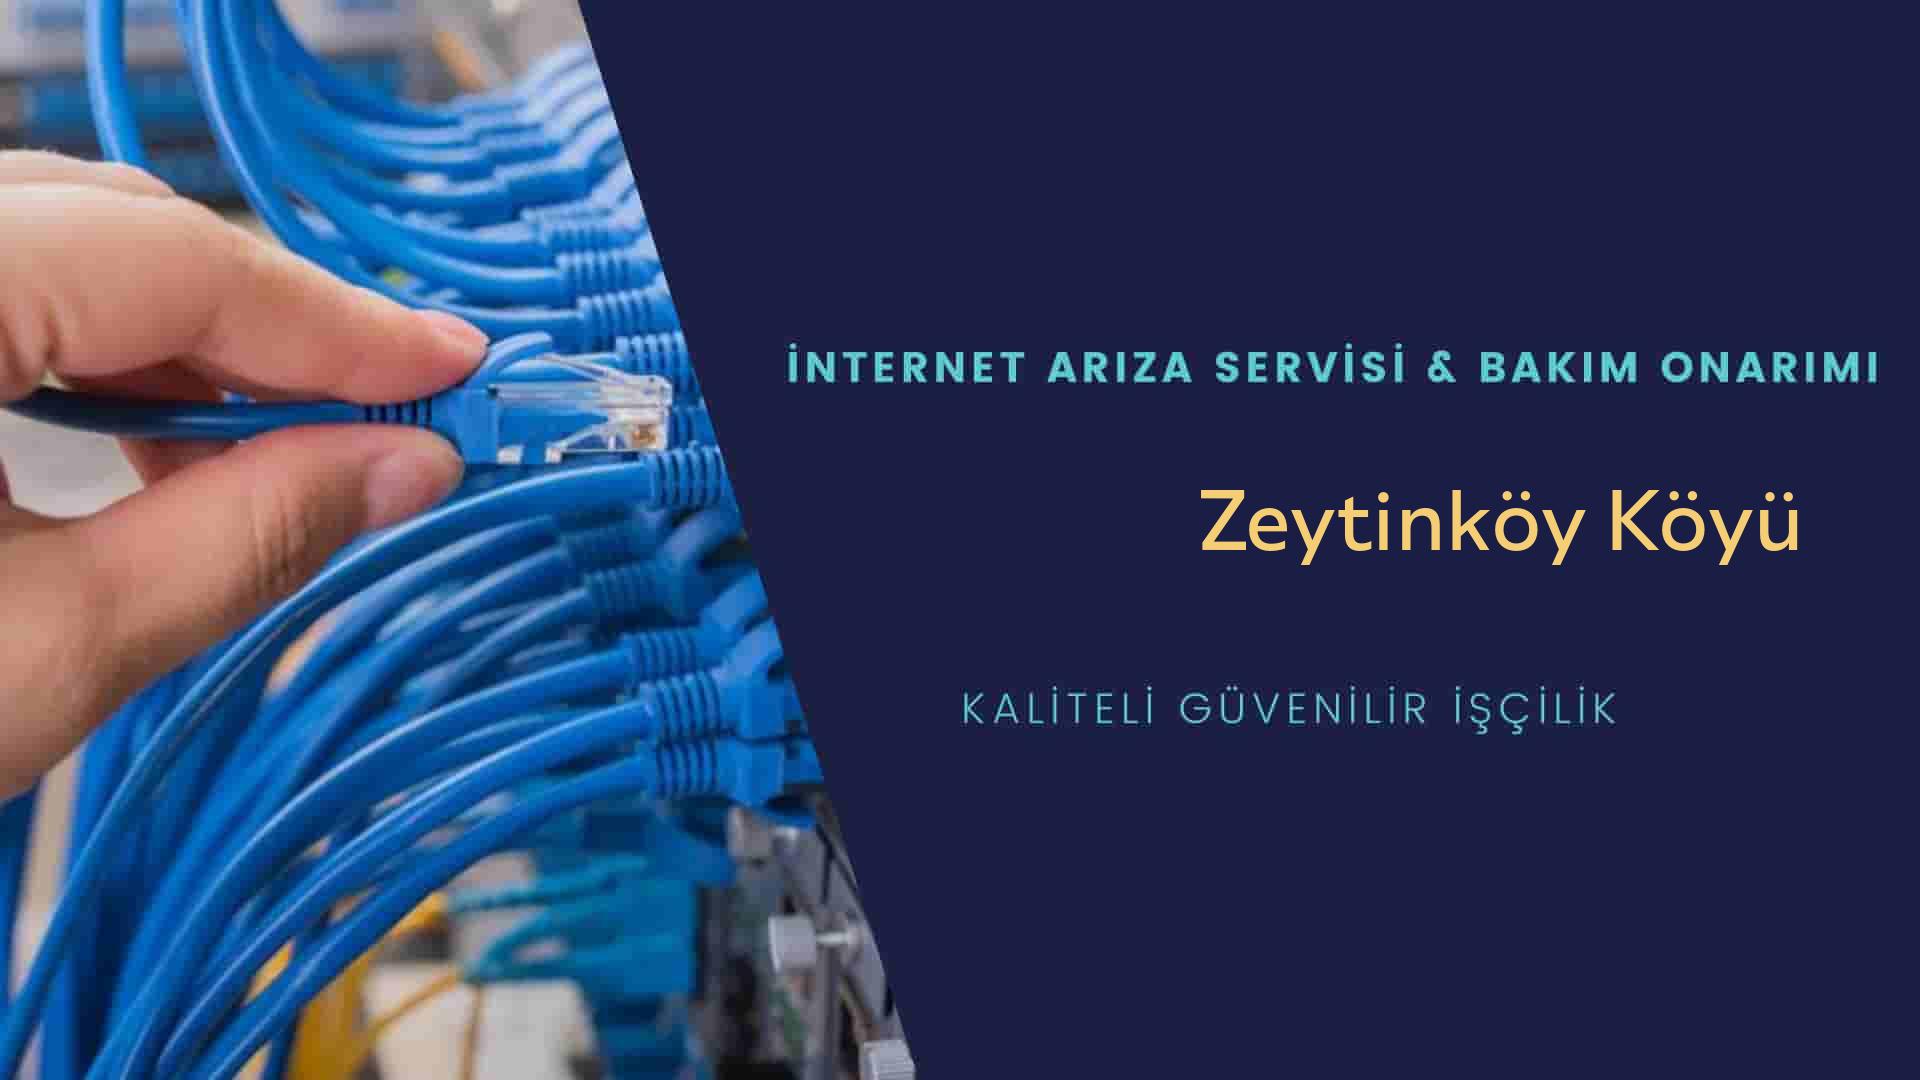 Zeytinköy Köyü internet kablosu çekimi yapan yerler veya elektrikçiler mi? arıyorsunuz doğru yerdesiniz o zaman sizlere 7/24 yardımcı olacak profesyonel ustalarımız bir telefon kadar yakındır size.